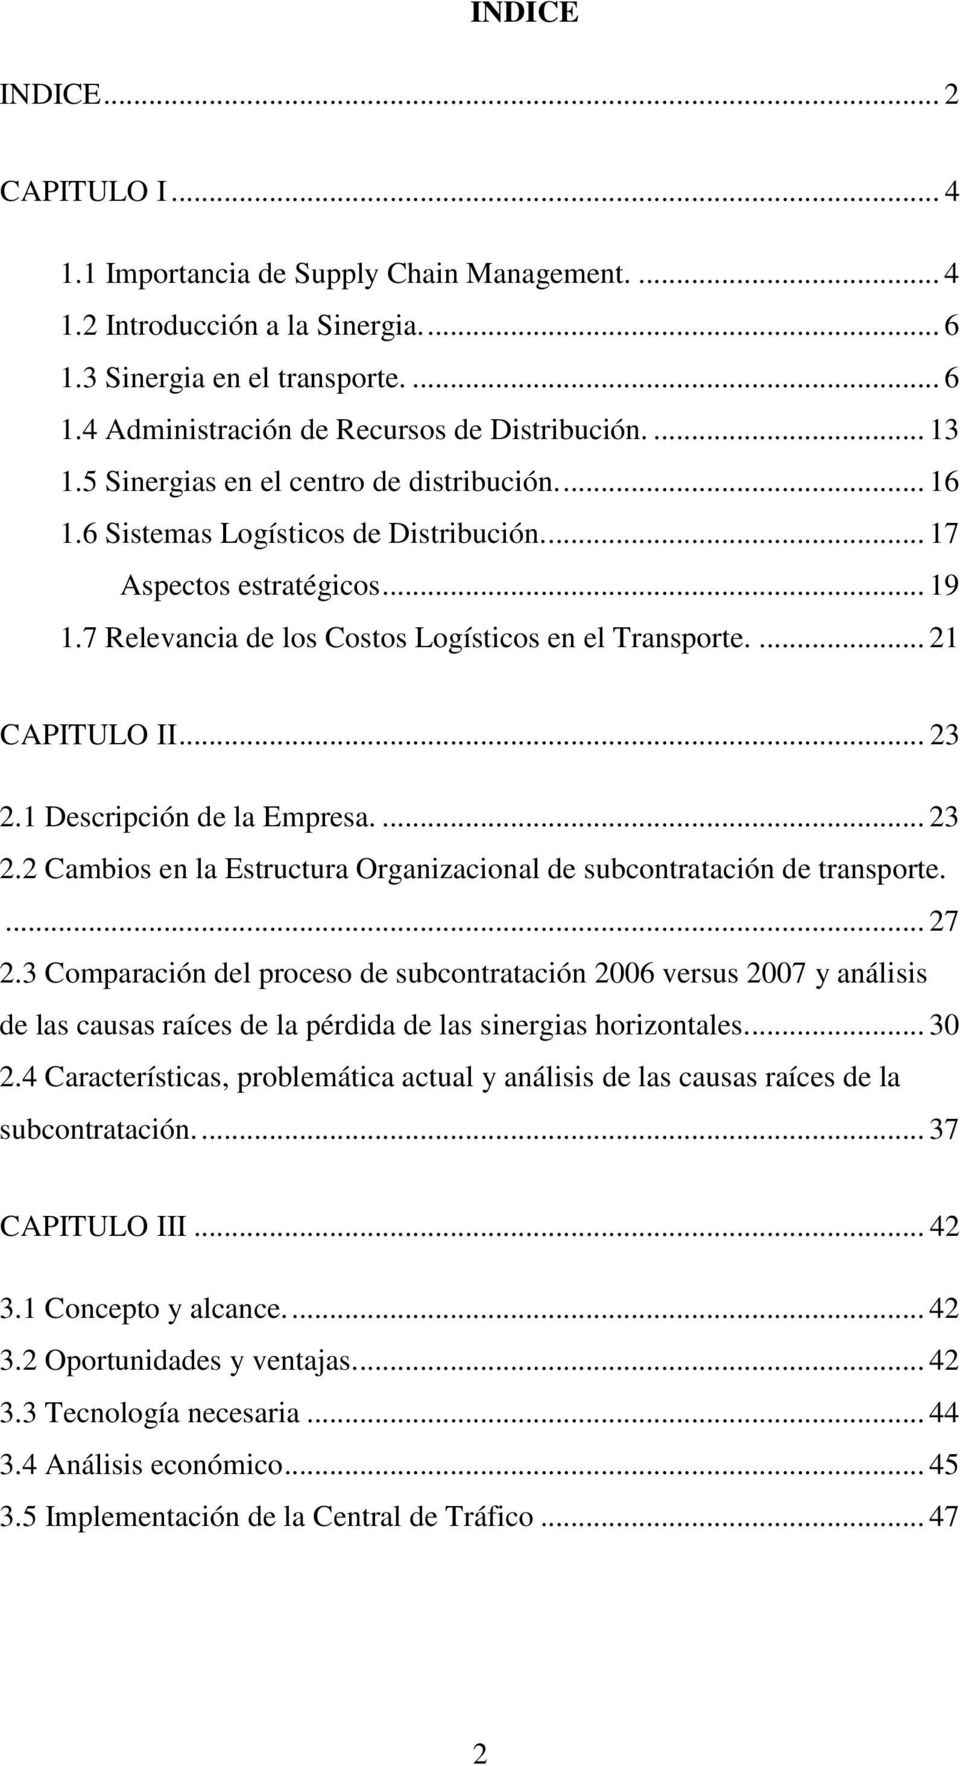 ... 21 CAPITULO II... 23 2.1 Descripción de la Empresa.... 23 2.2 Cambios en la Estructura Organizacional de subcontratación de transporte.... 27 2.